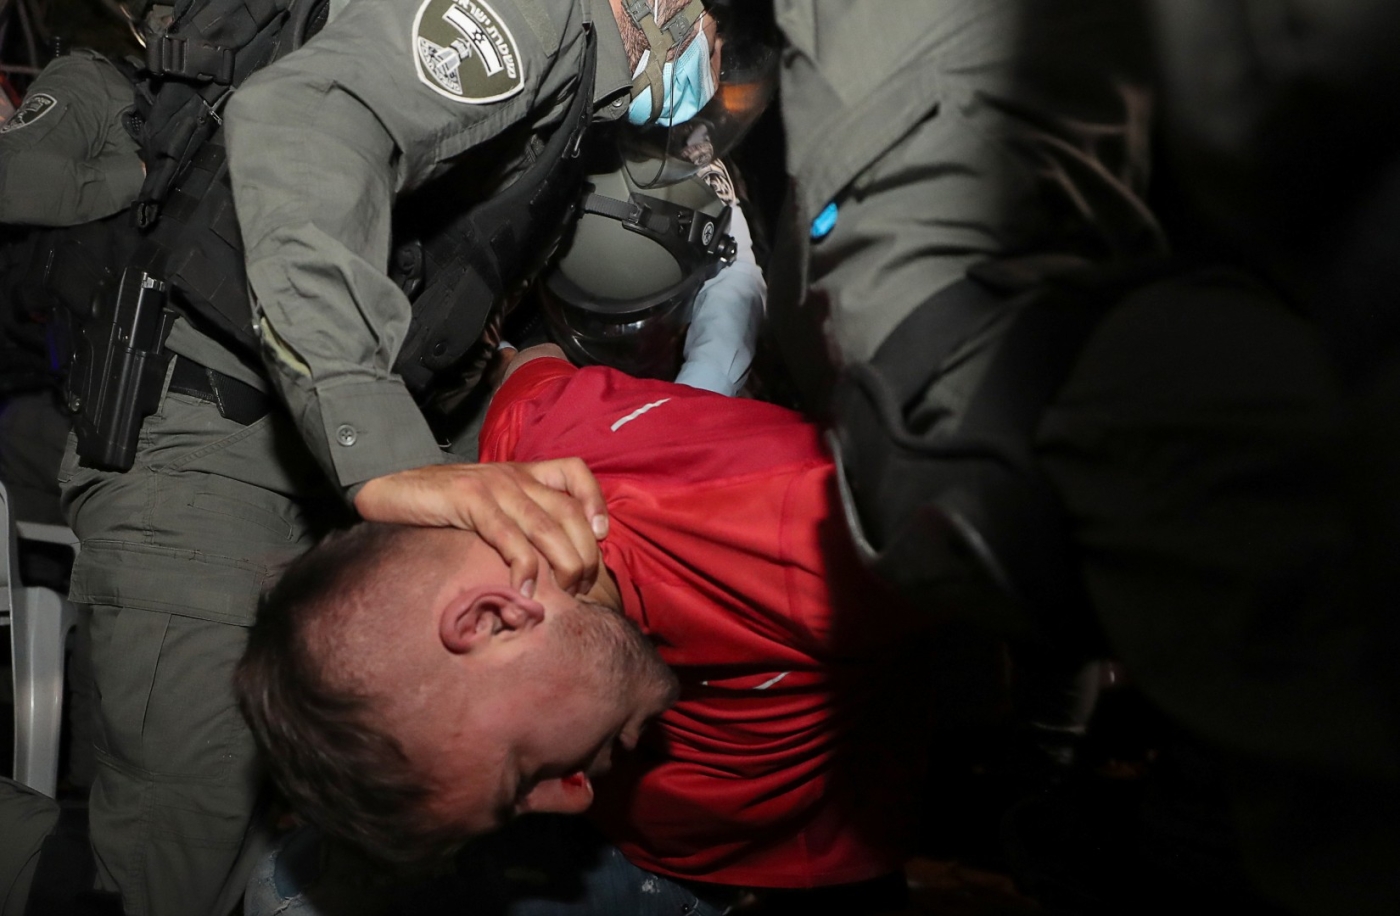 Des policiers israéliens interpellent un manifestant palestinien dans le quartier de Sheikh Jarrah, à Jérusalem-Est occupée, le 5 mai 2021 (AFP)